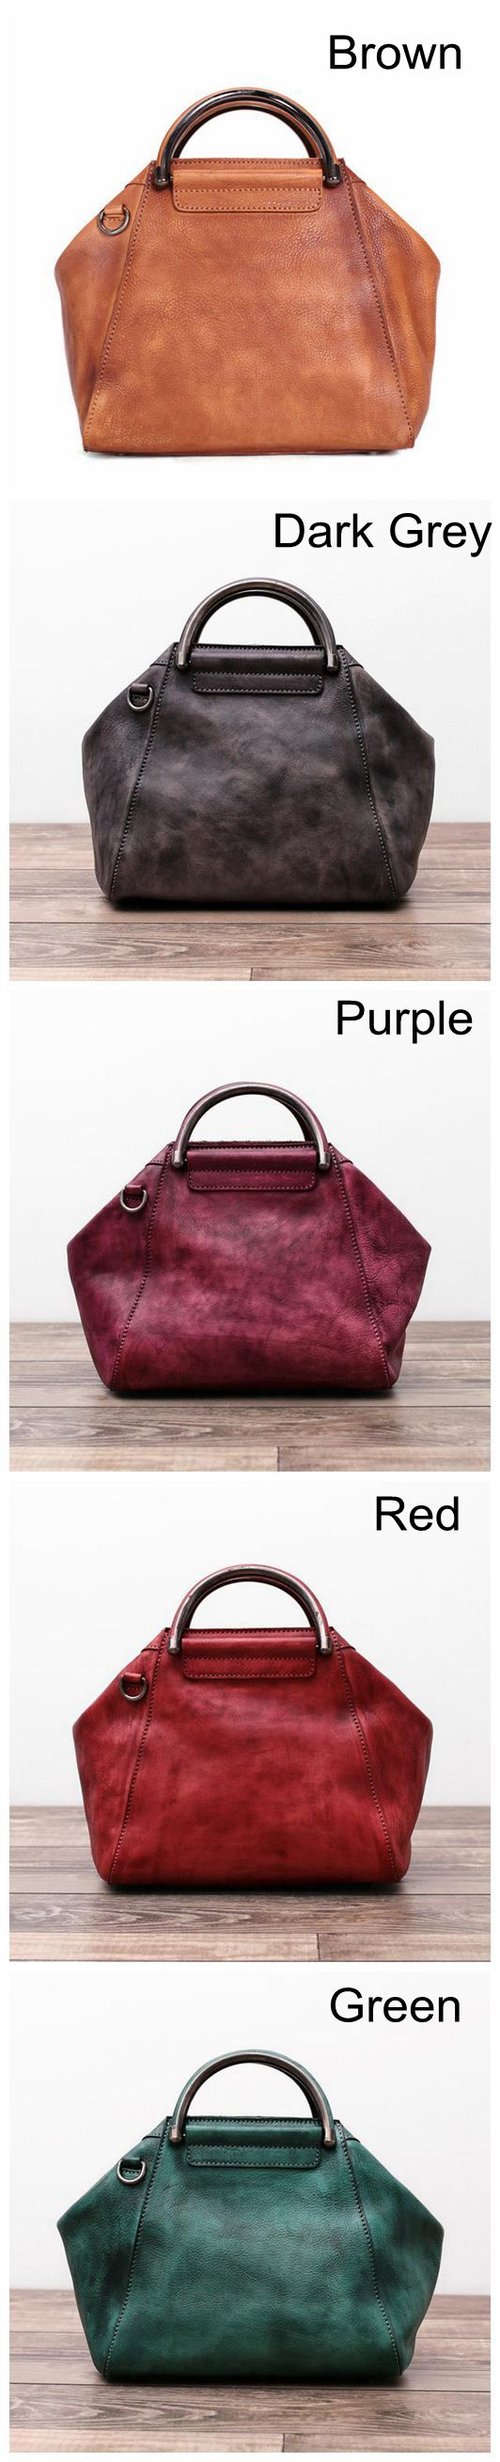 Image of Handmade Full Grain Leather Women Handbag, Designer Handbag, Leather Satchel Bag WF52